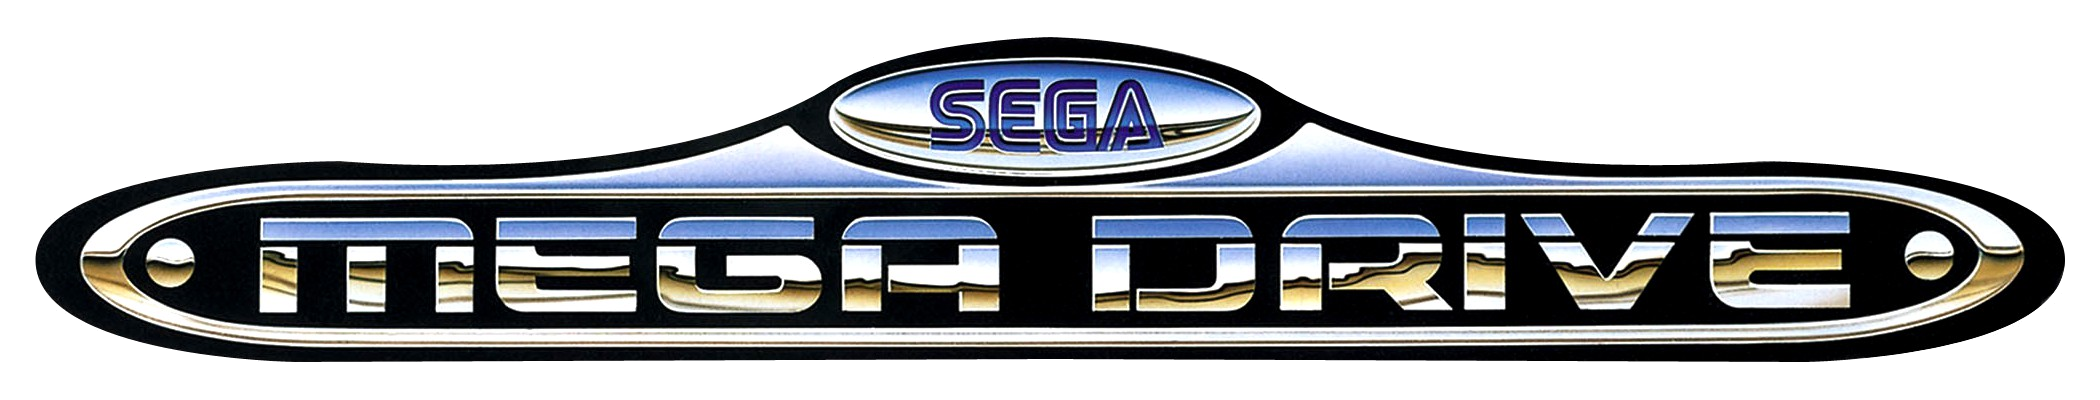 Sega Megadrive